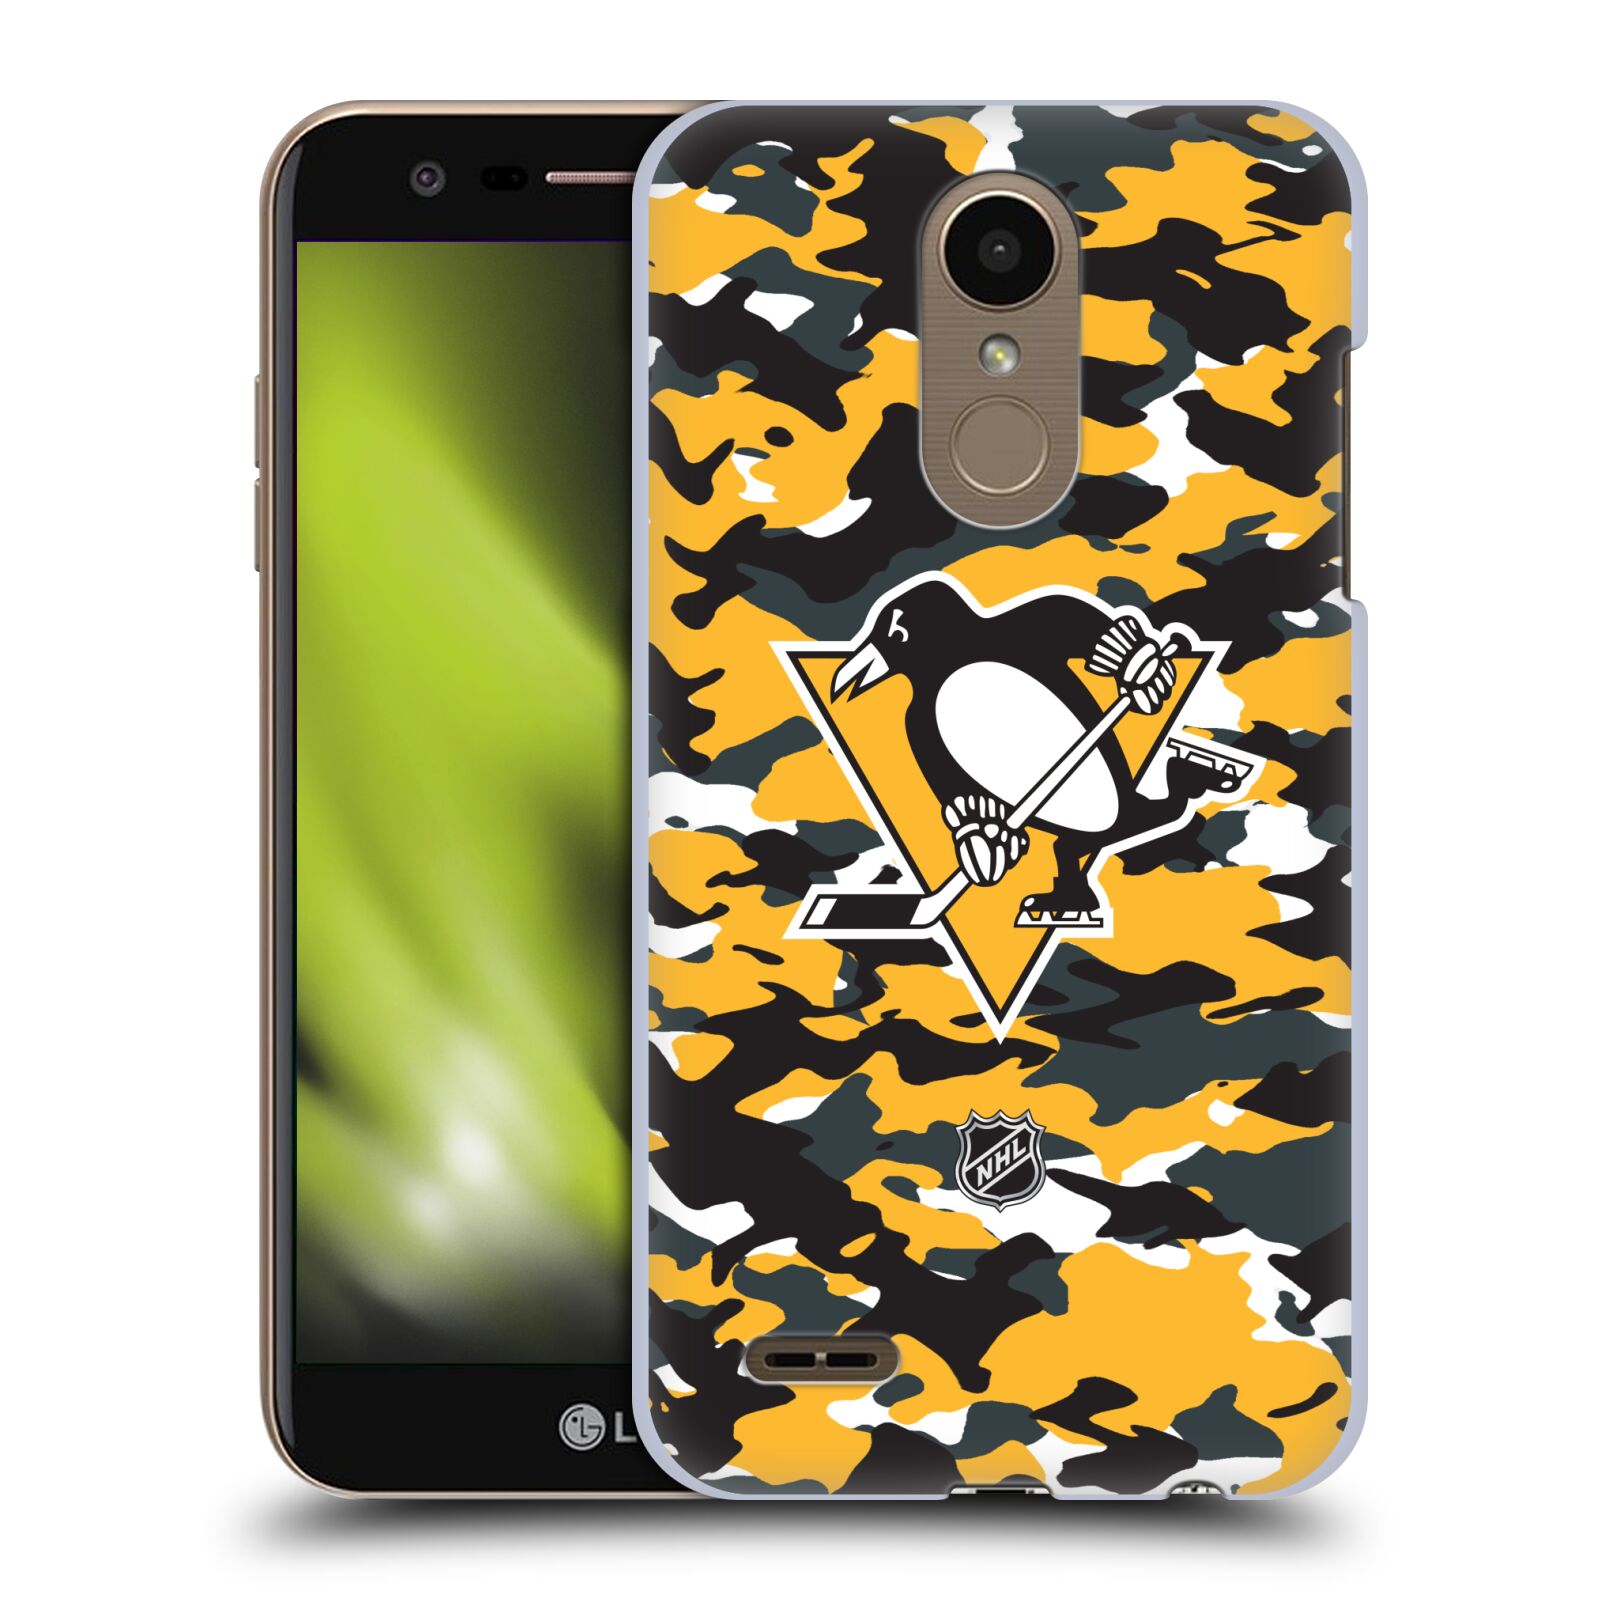 Pouzdro na mobil LG K10 2018 - HEAD CASE - Hokej NHL - Pittsburgh Penguins - kamufláž znak